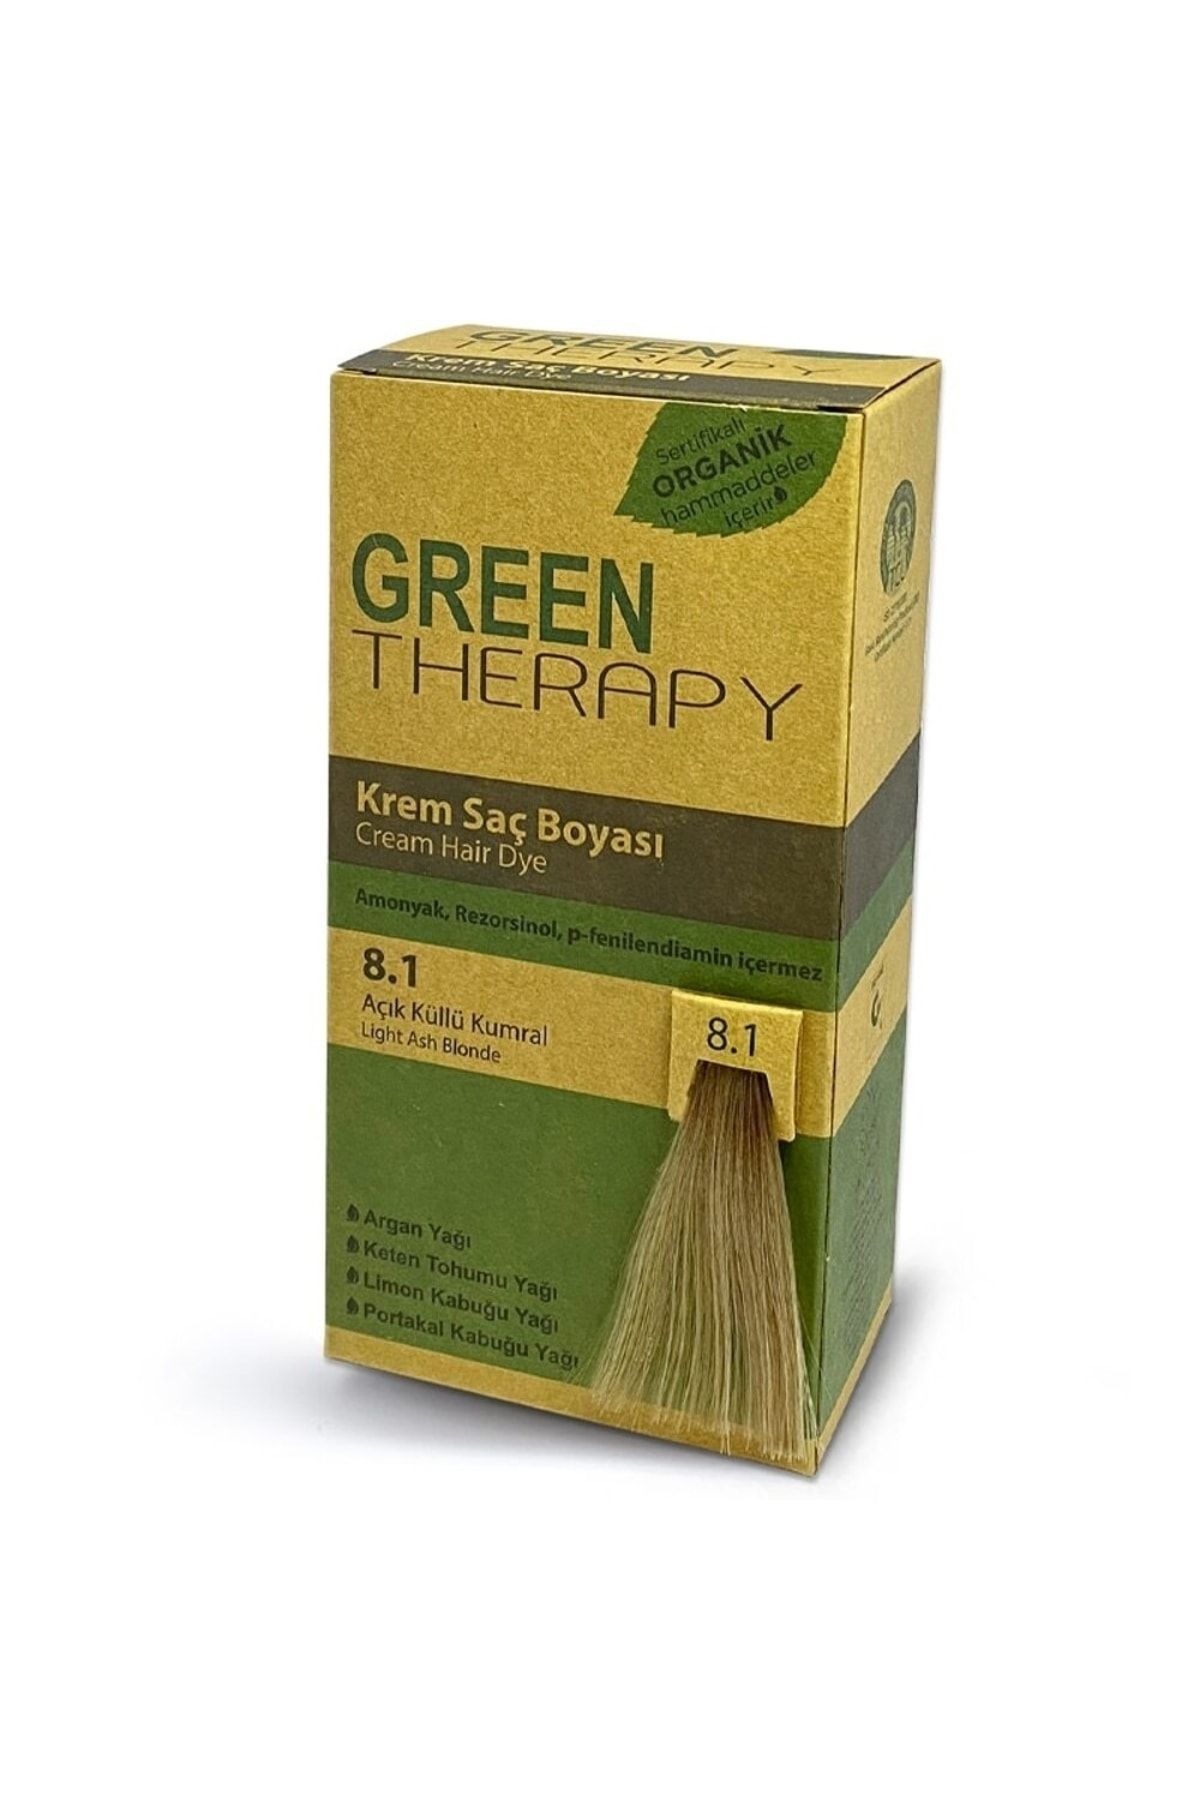 Green Therapy Krem Saç Boyası 6,0 Koyu Kumral